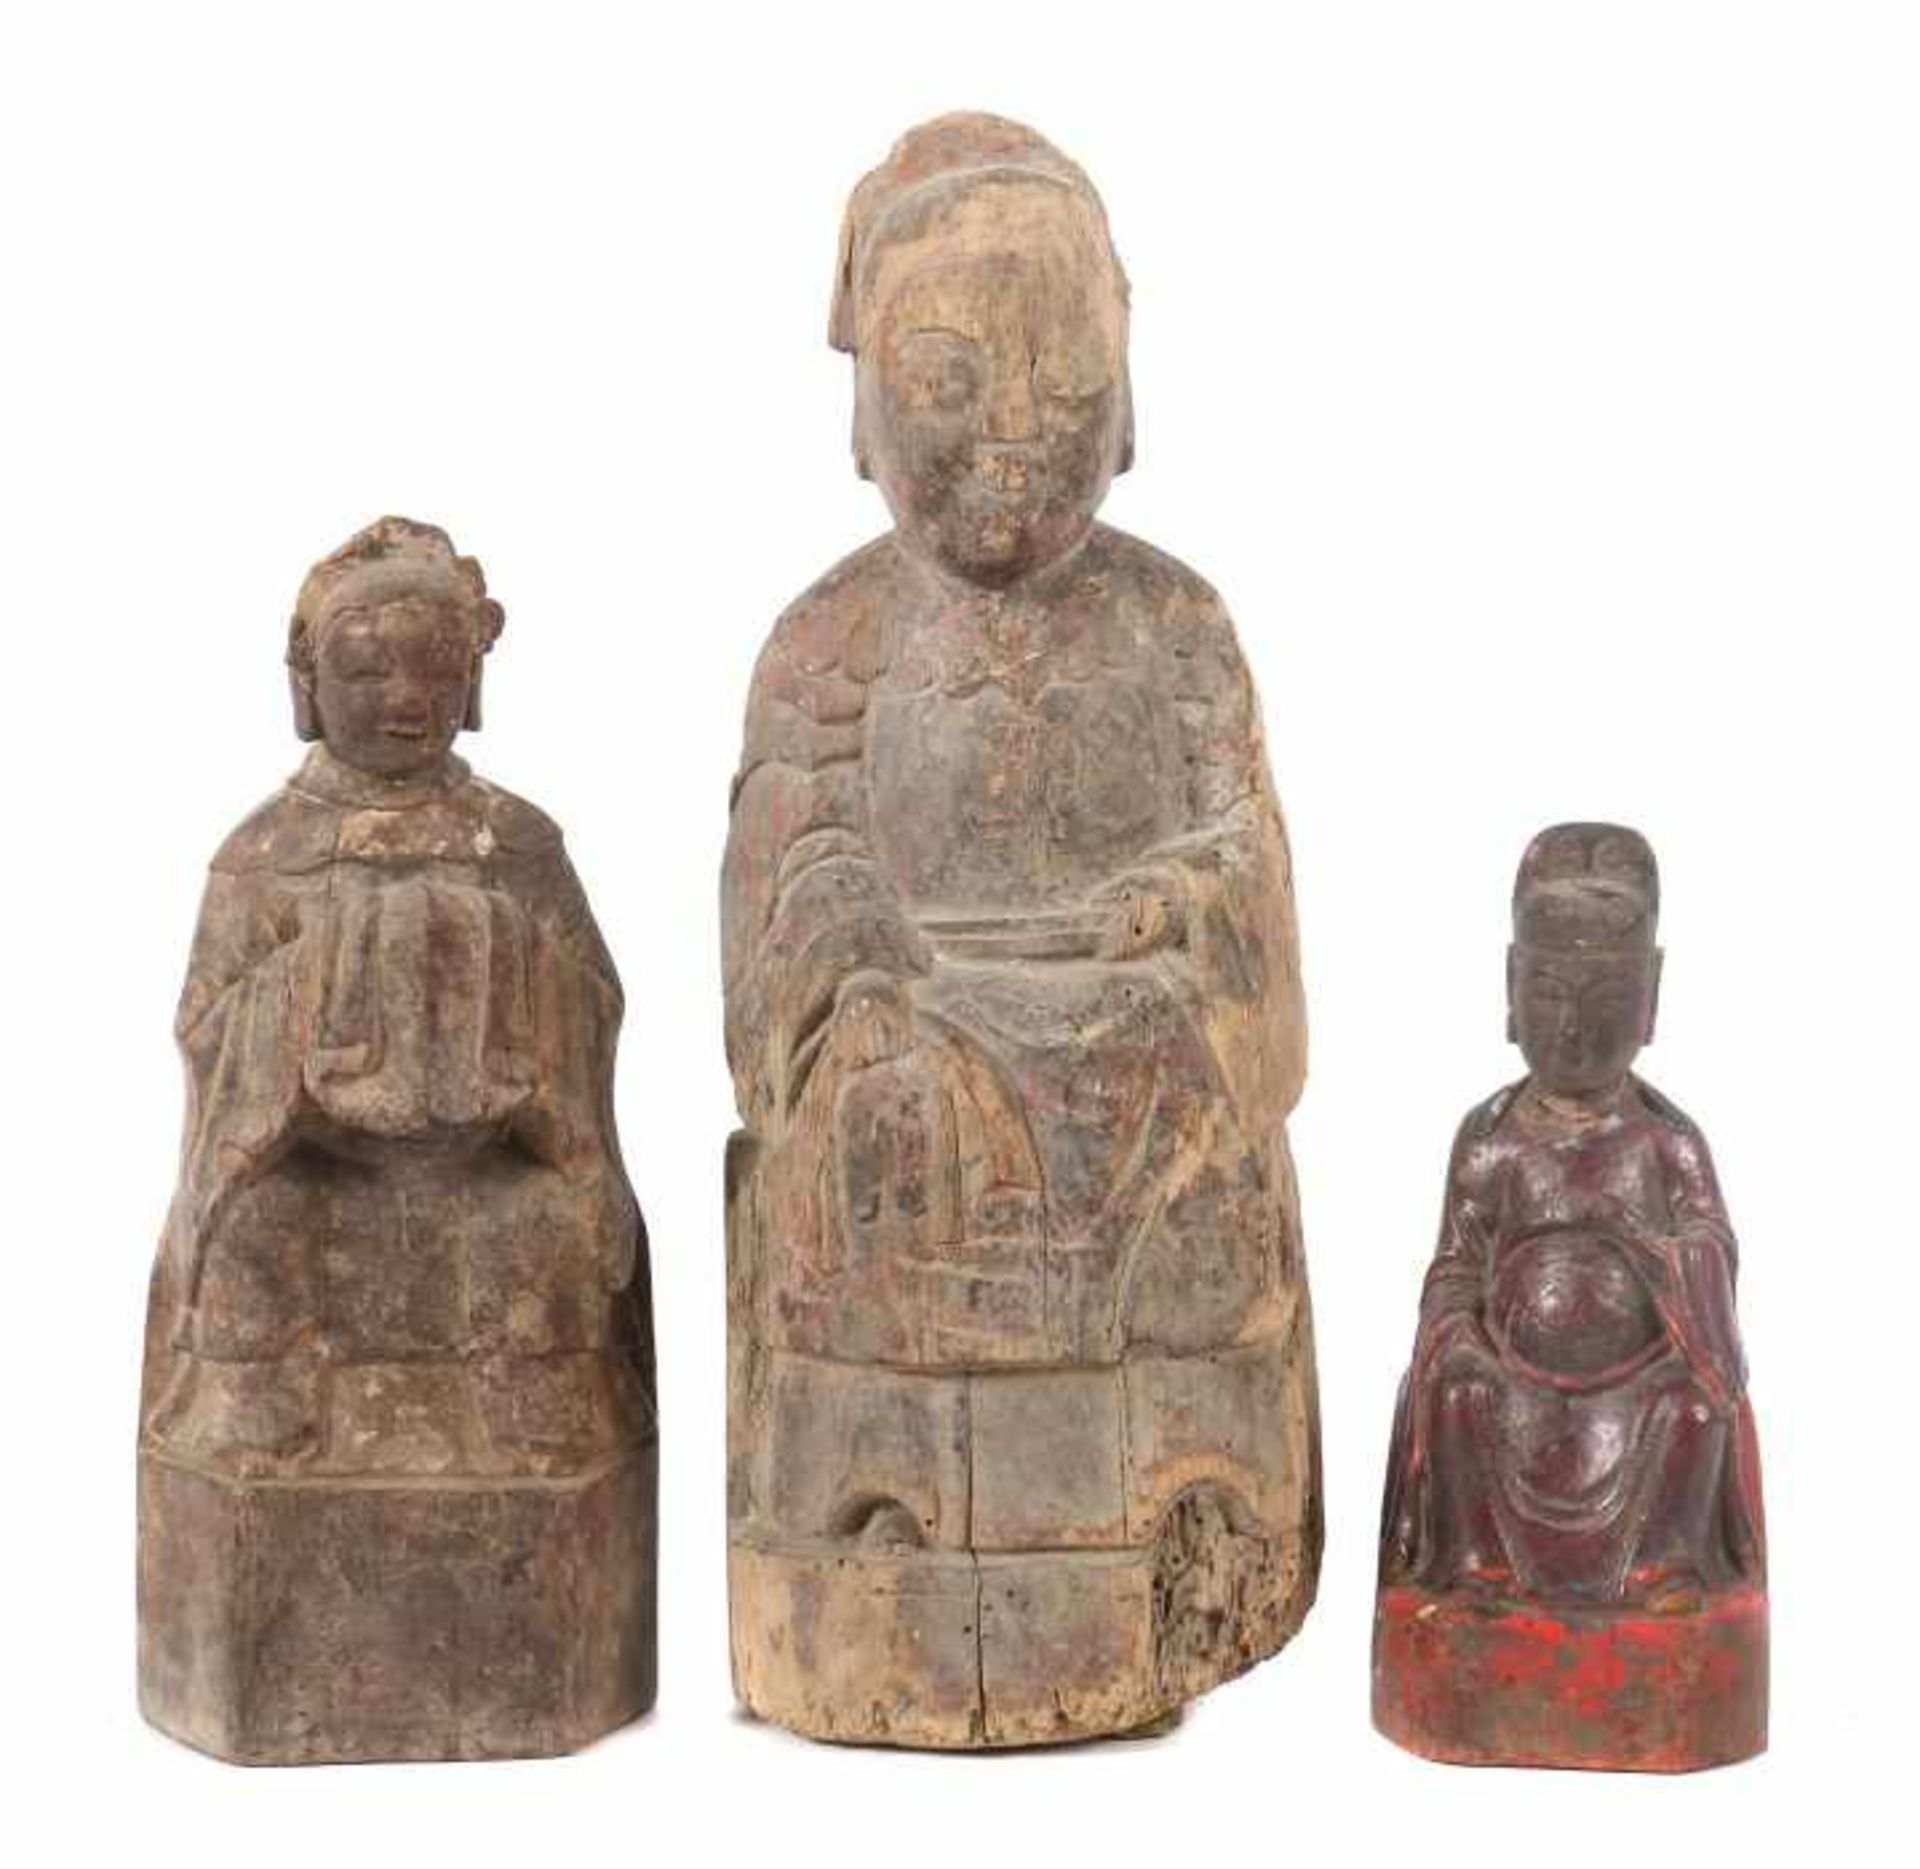 3 höfische FigurenChina, wohl 18./19. Jh., Holz/Reste einer Fassung, 3 vollplastische Schnitzereien,